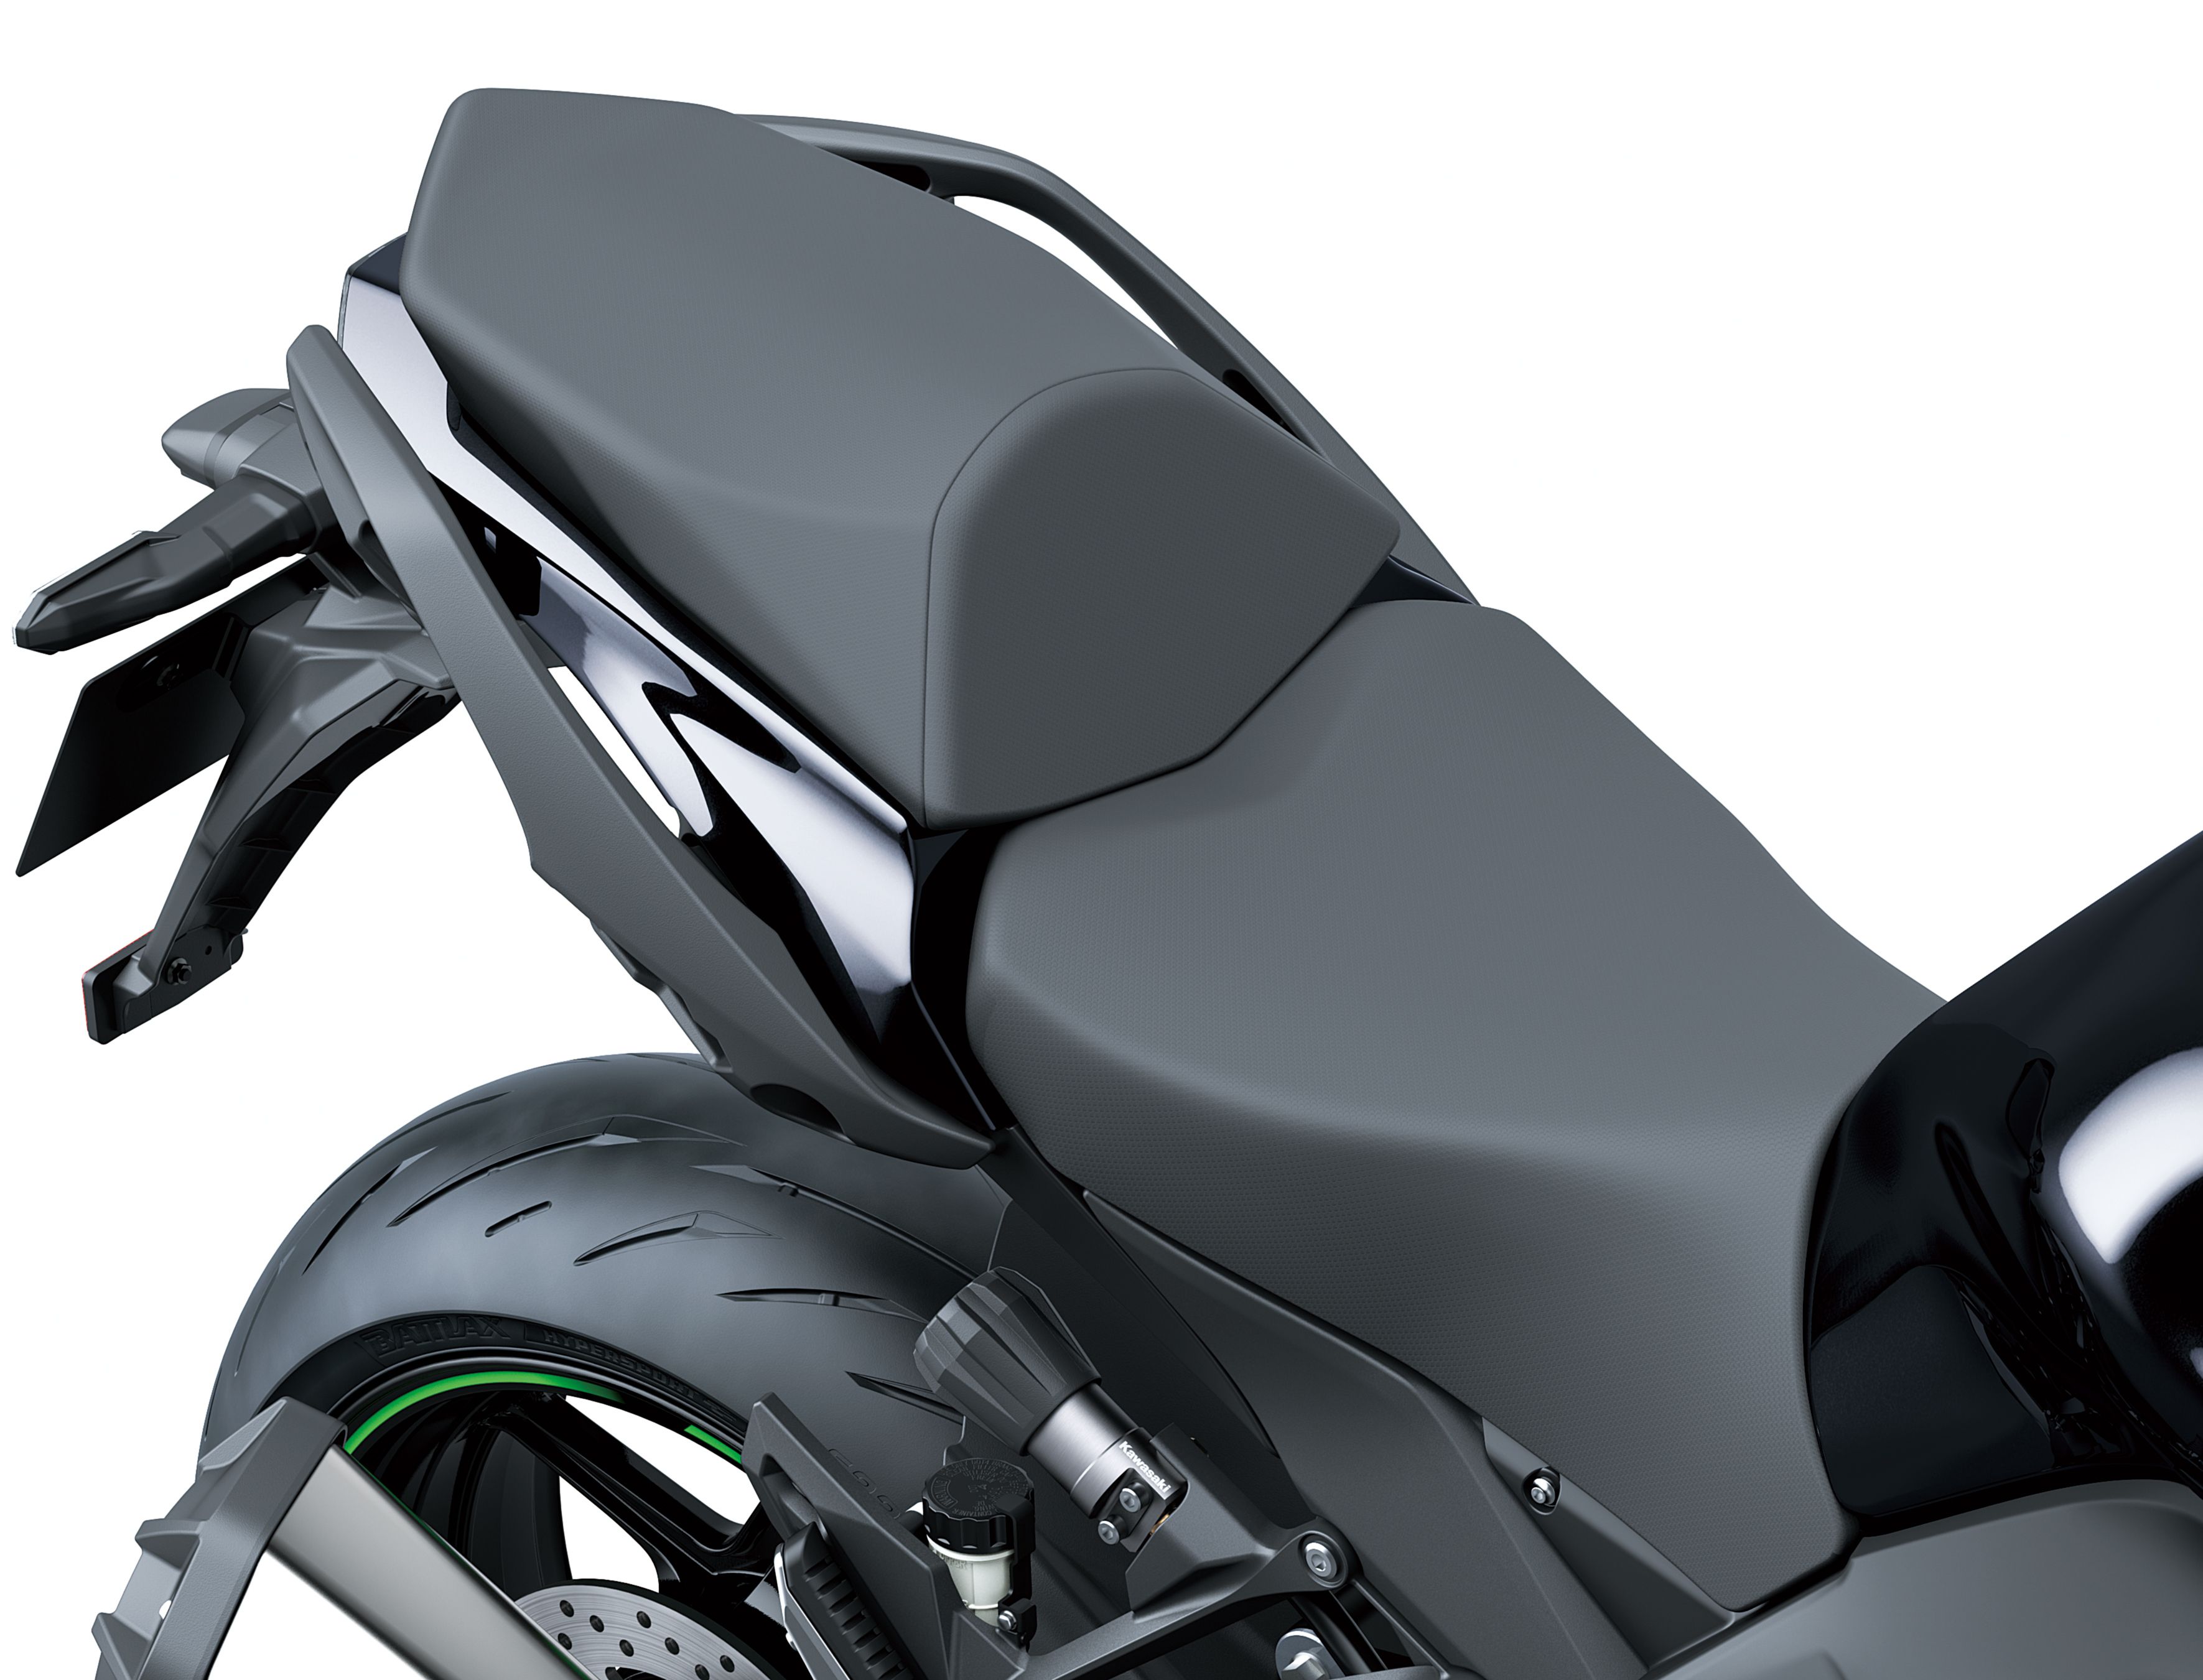 2020 - 2022 Kawasaki Ninja 1000SX